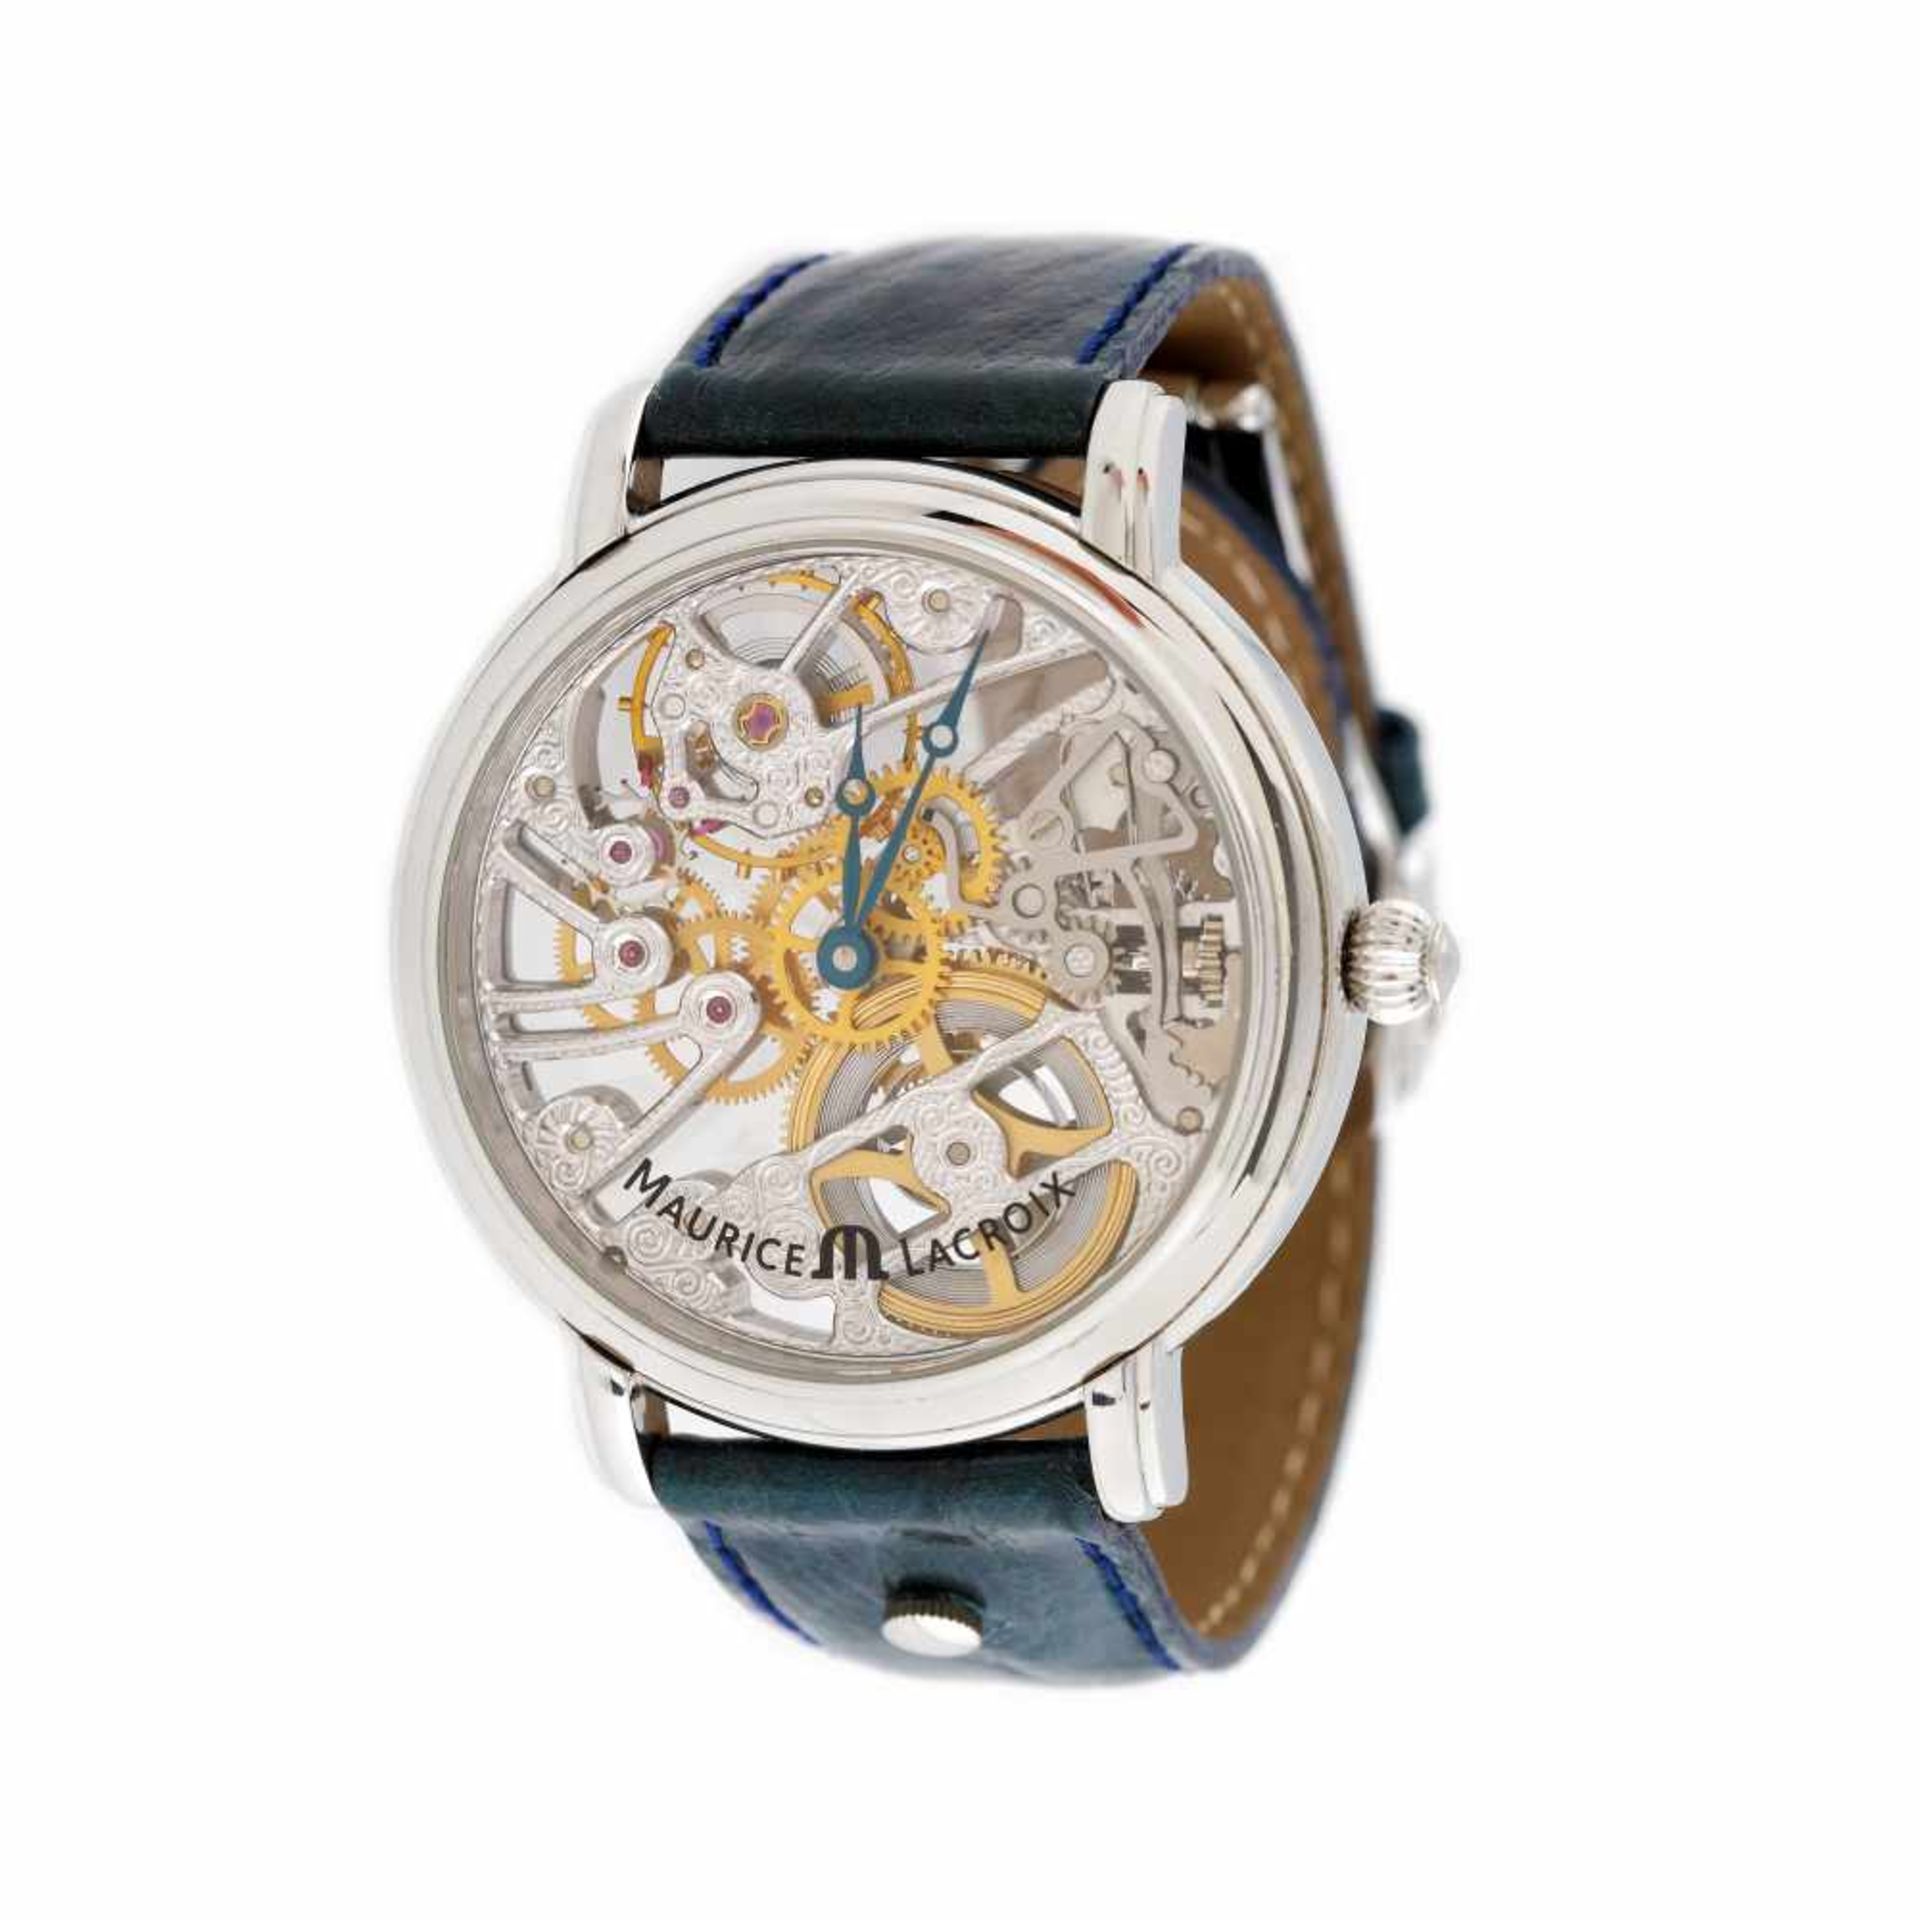 Maurice Lacroix Masterpiece Squelette Tradition wristwatch, menMaurice Lacroix Masterpiece Sque